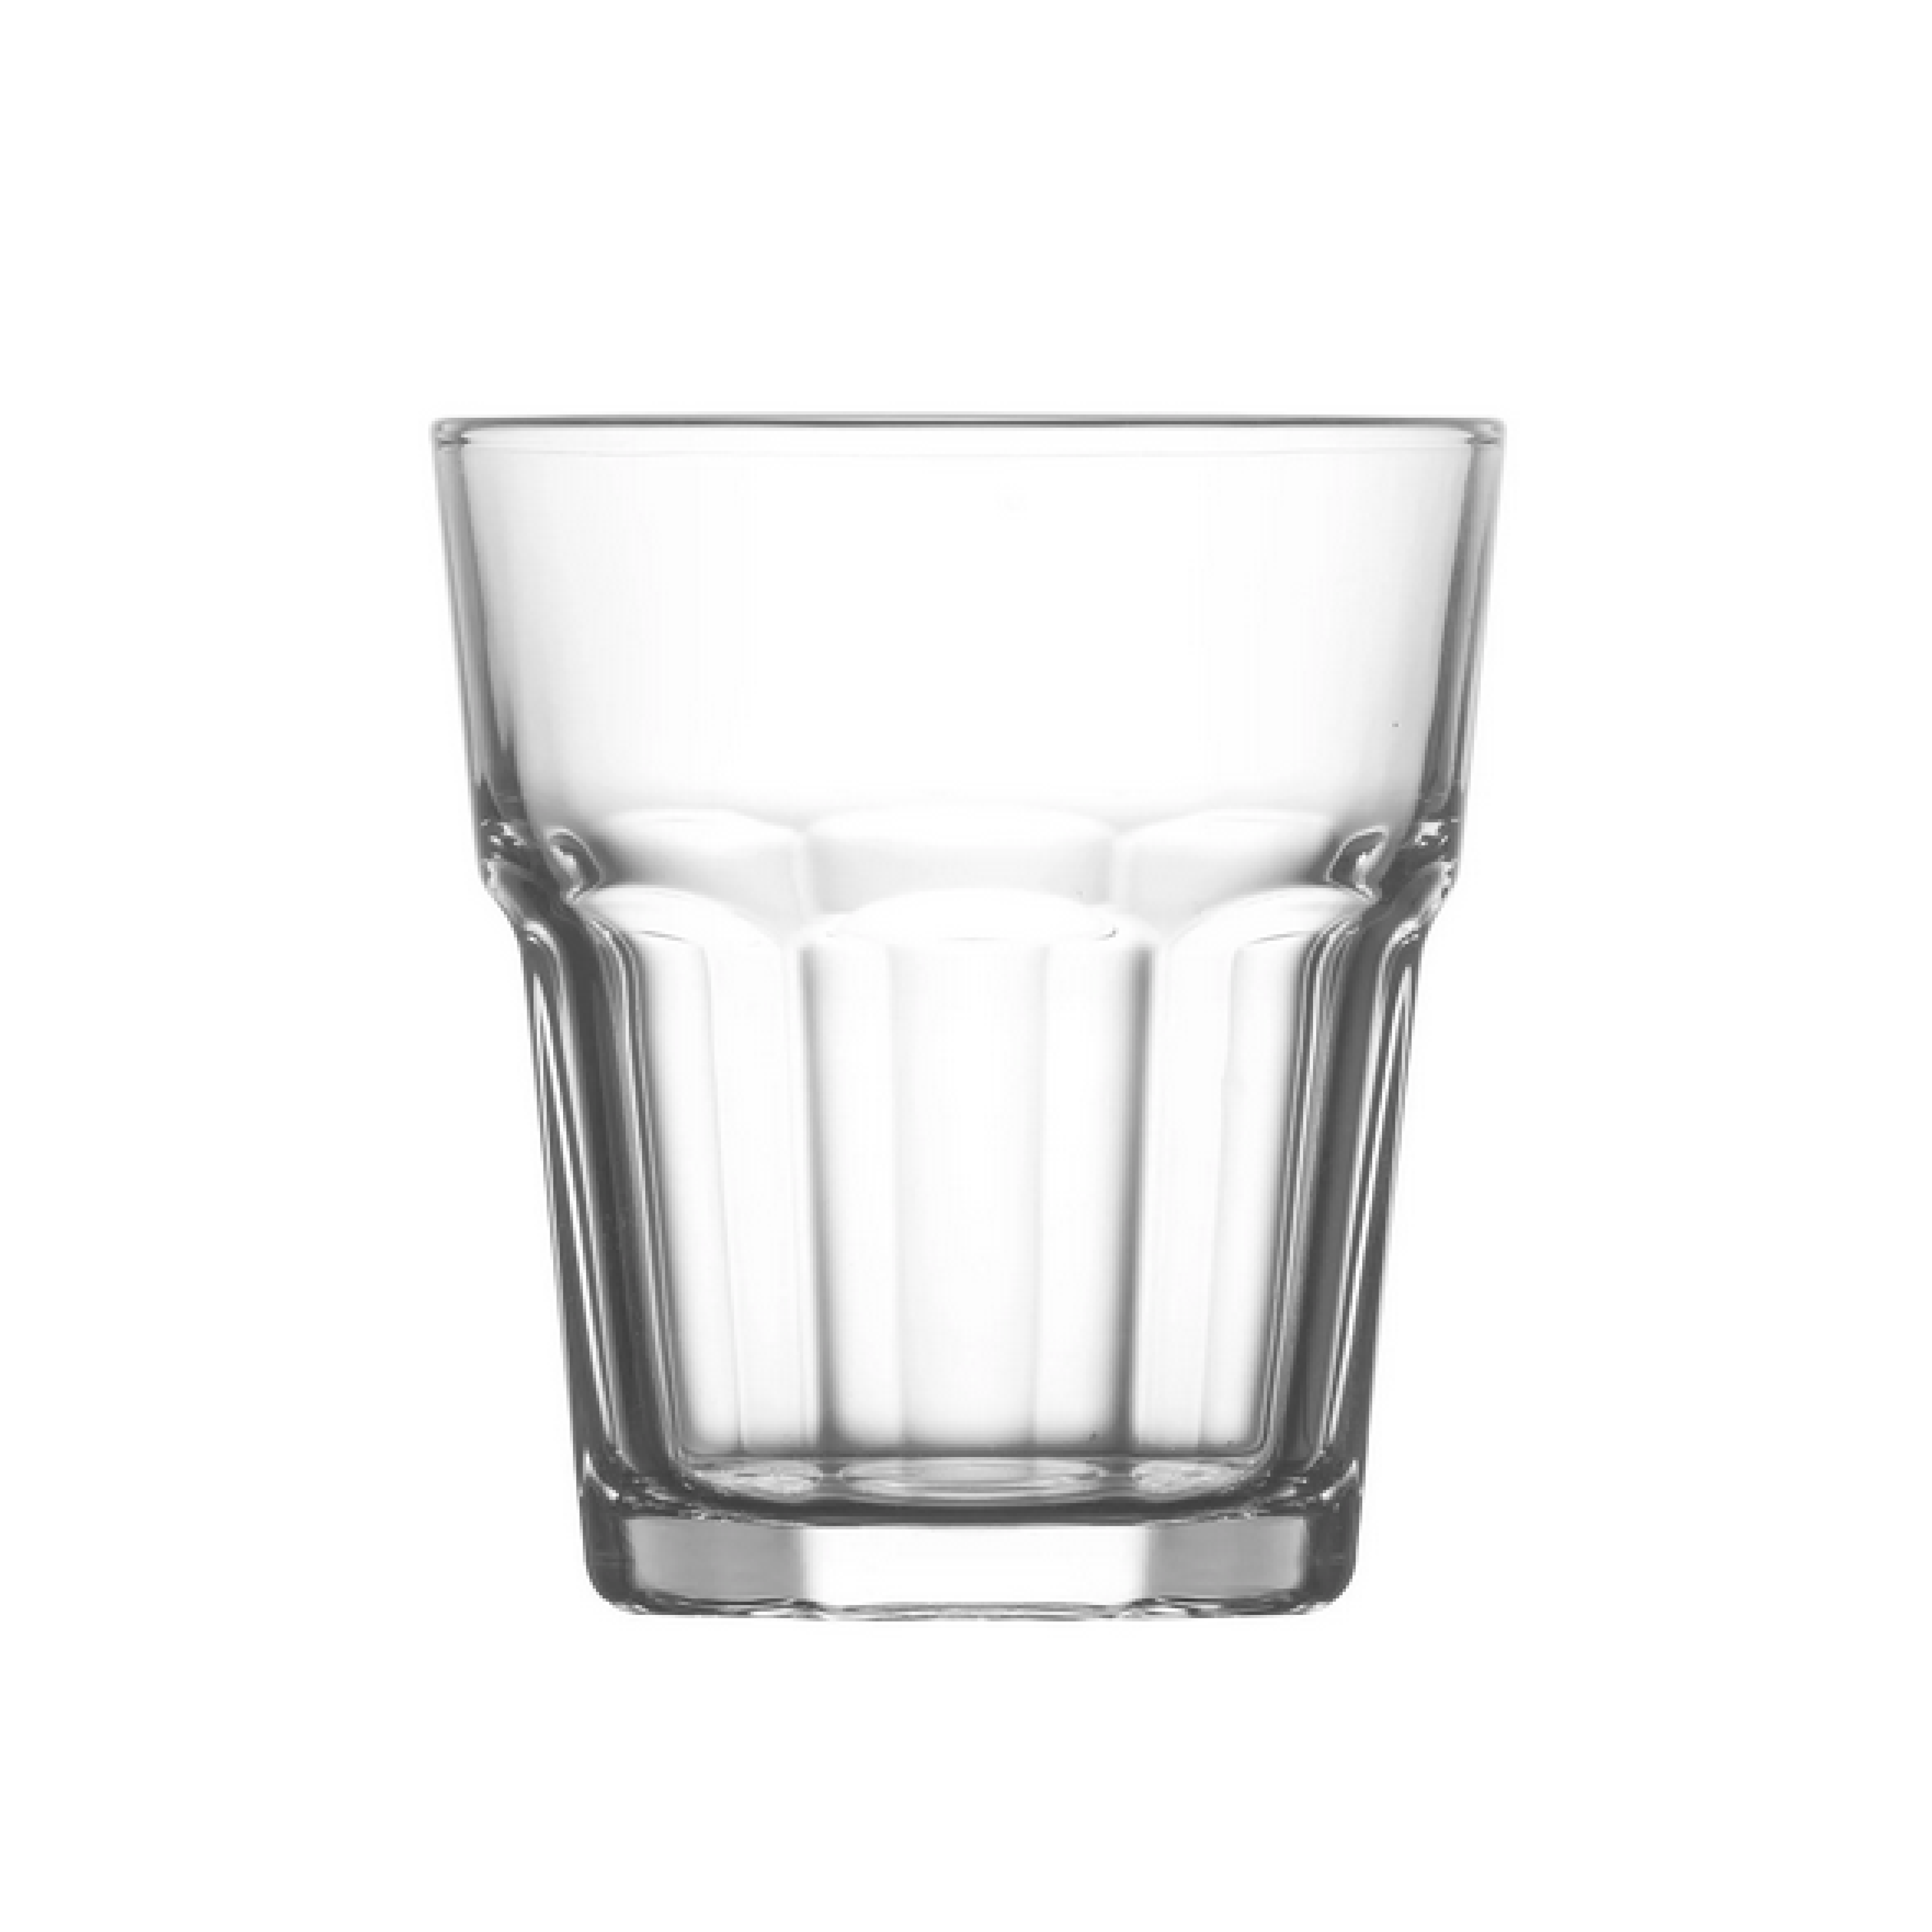 Gotë qelqi për ujë & uiski Aras (12 copë), 305 ML